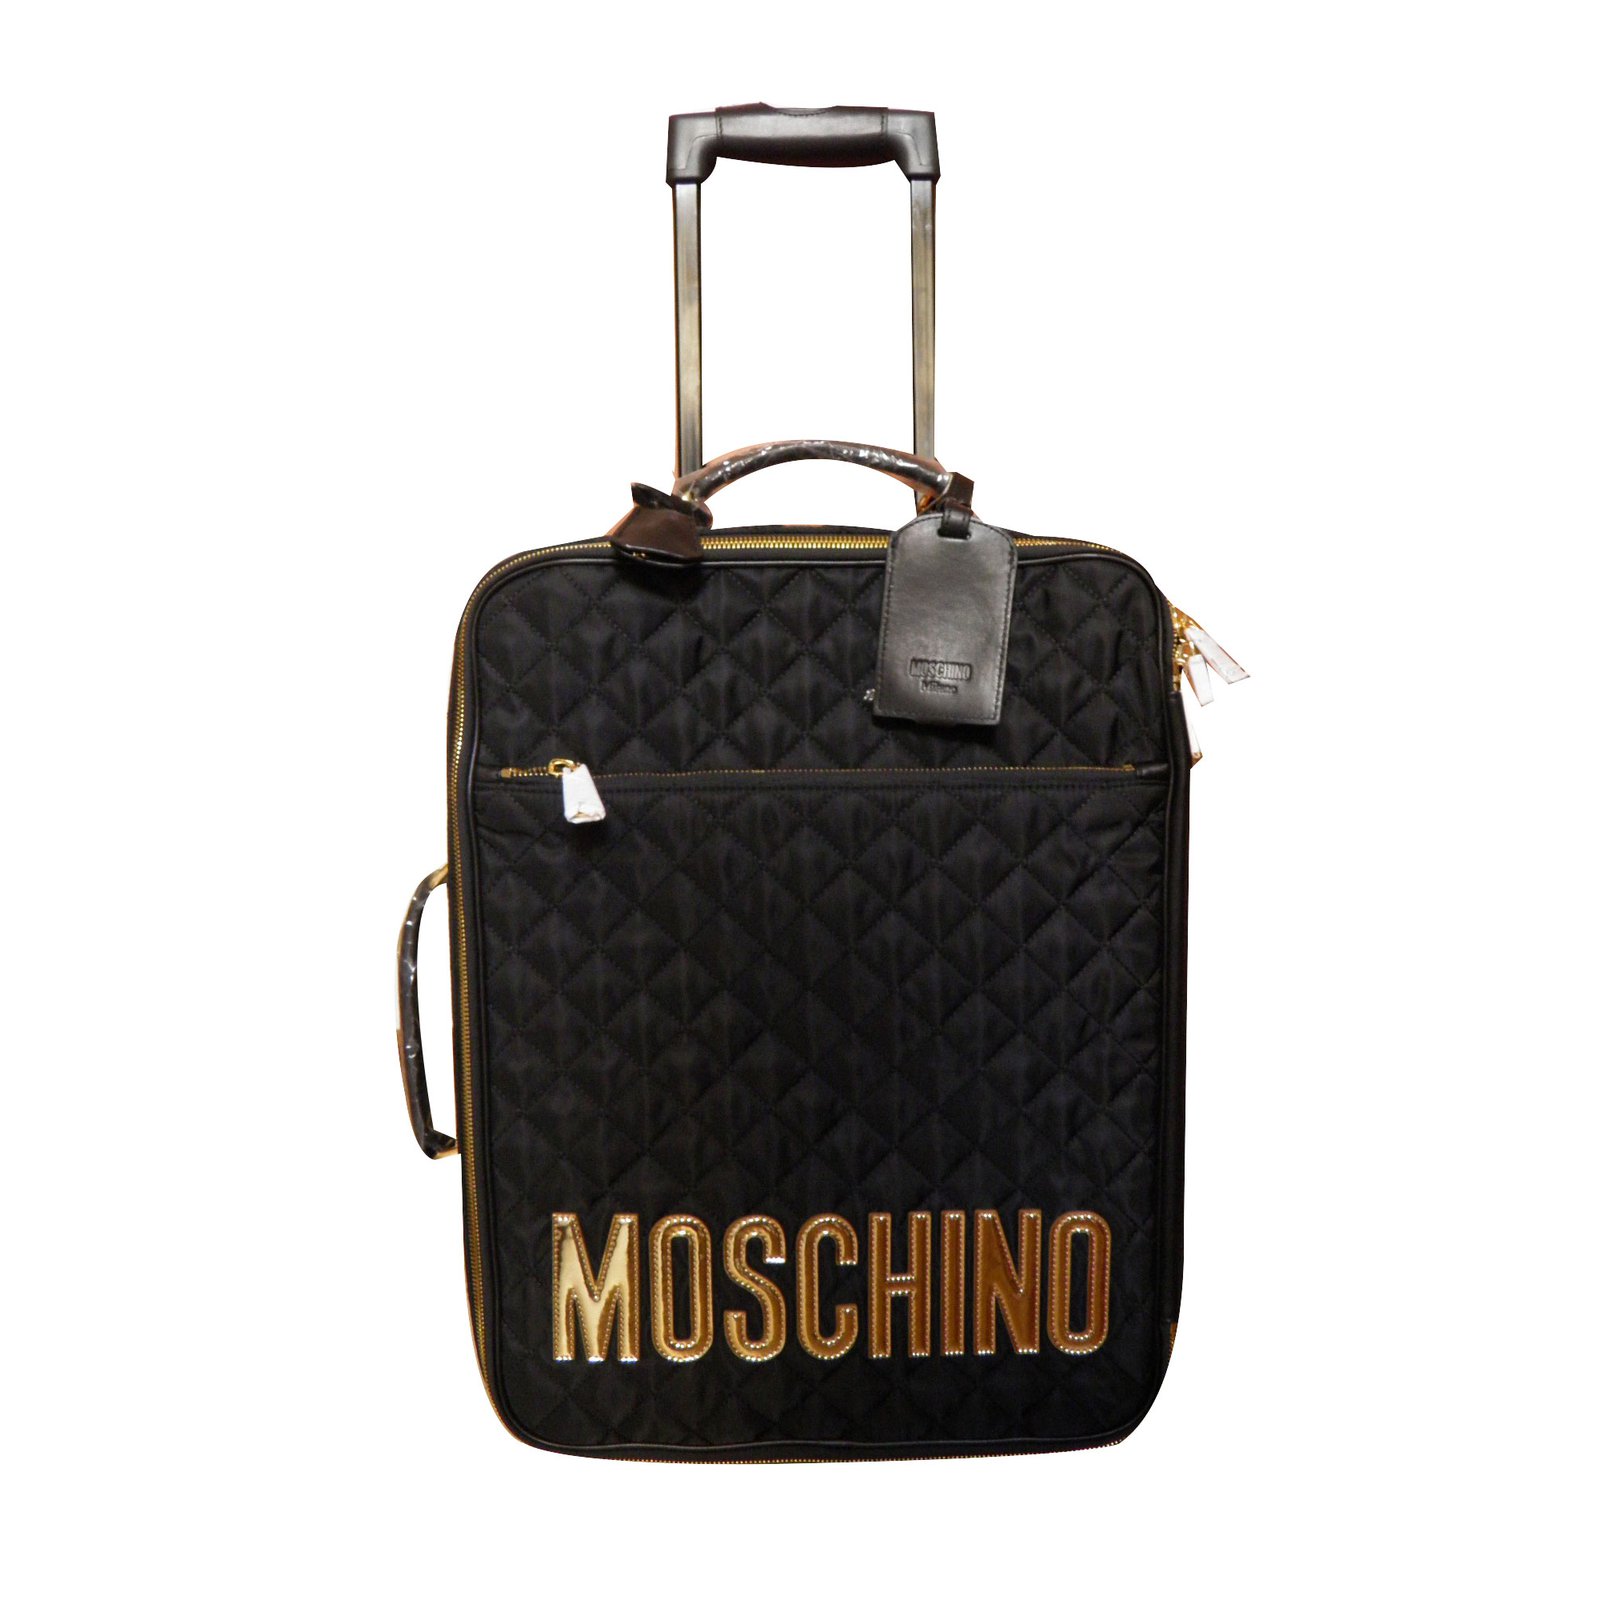 moschino suitcase